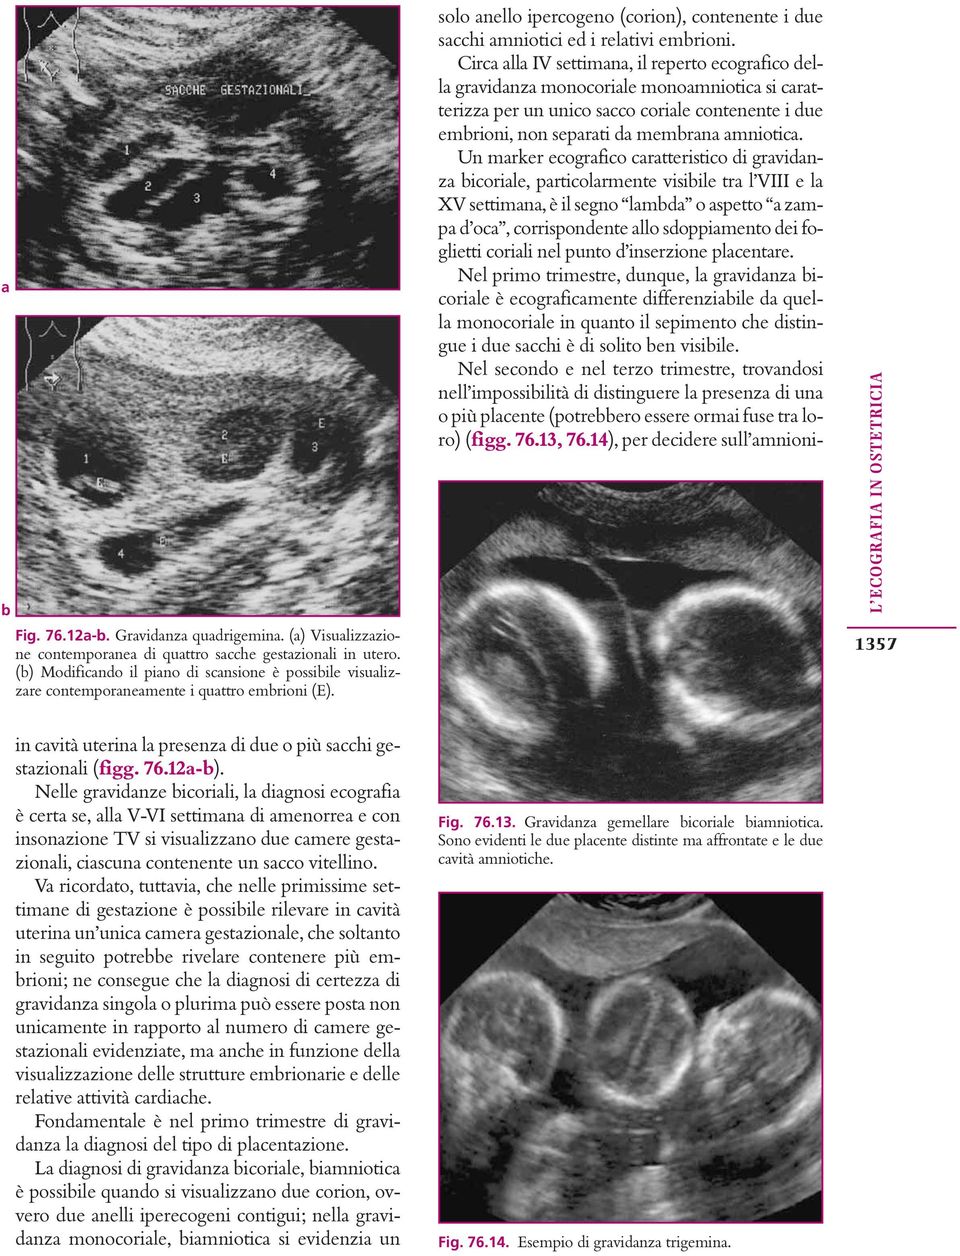 Circa alla IV settimana, il reperto ecografico della gravidanza monocoriale monoamniotica si caratterizza per un unico sacco coriale contenente i due emrioni, non separati da memrana amniotica.